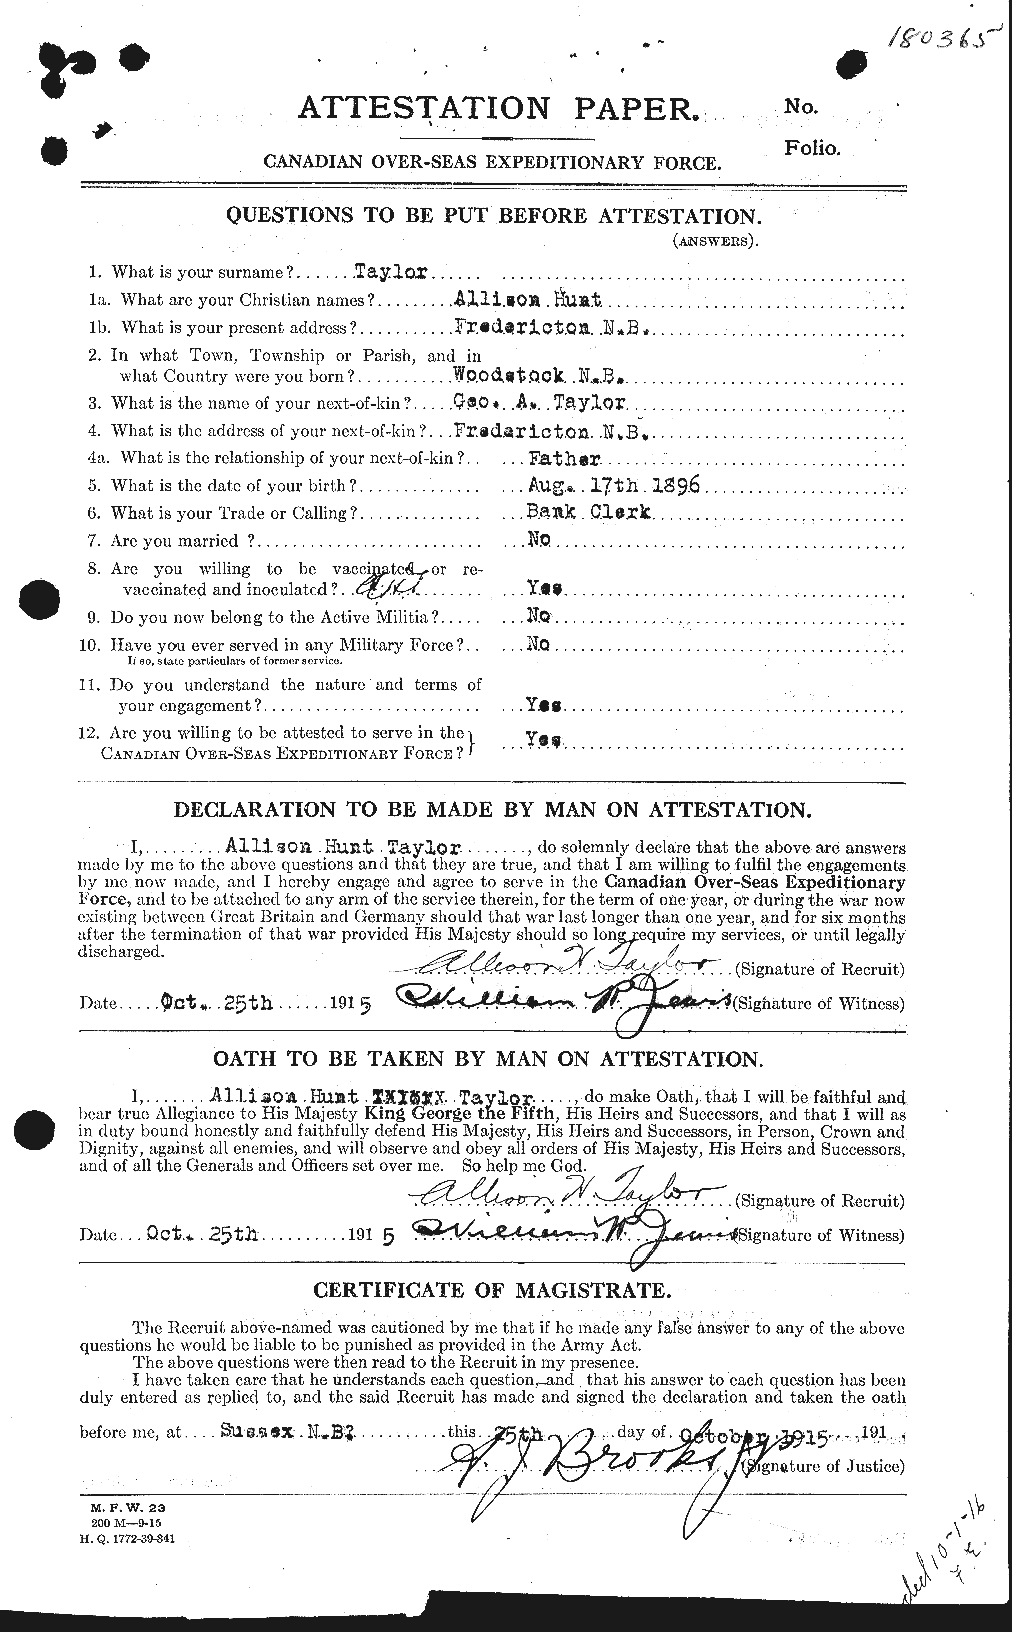 Dossiers du Personnel de la Première Guerre mondiale - CEC 626212a